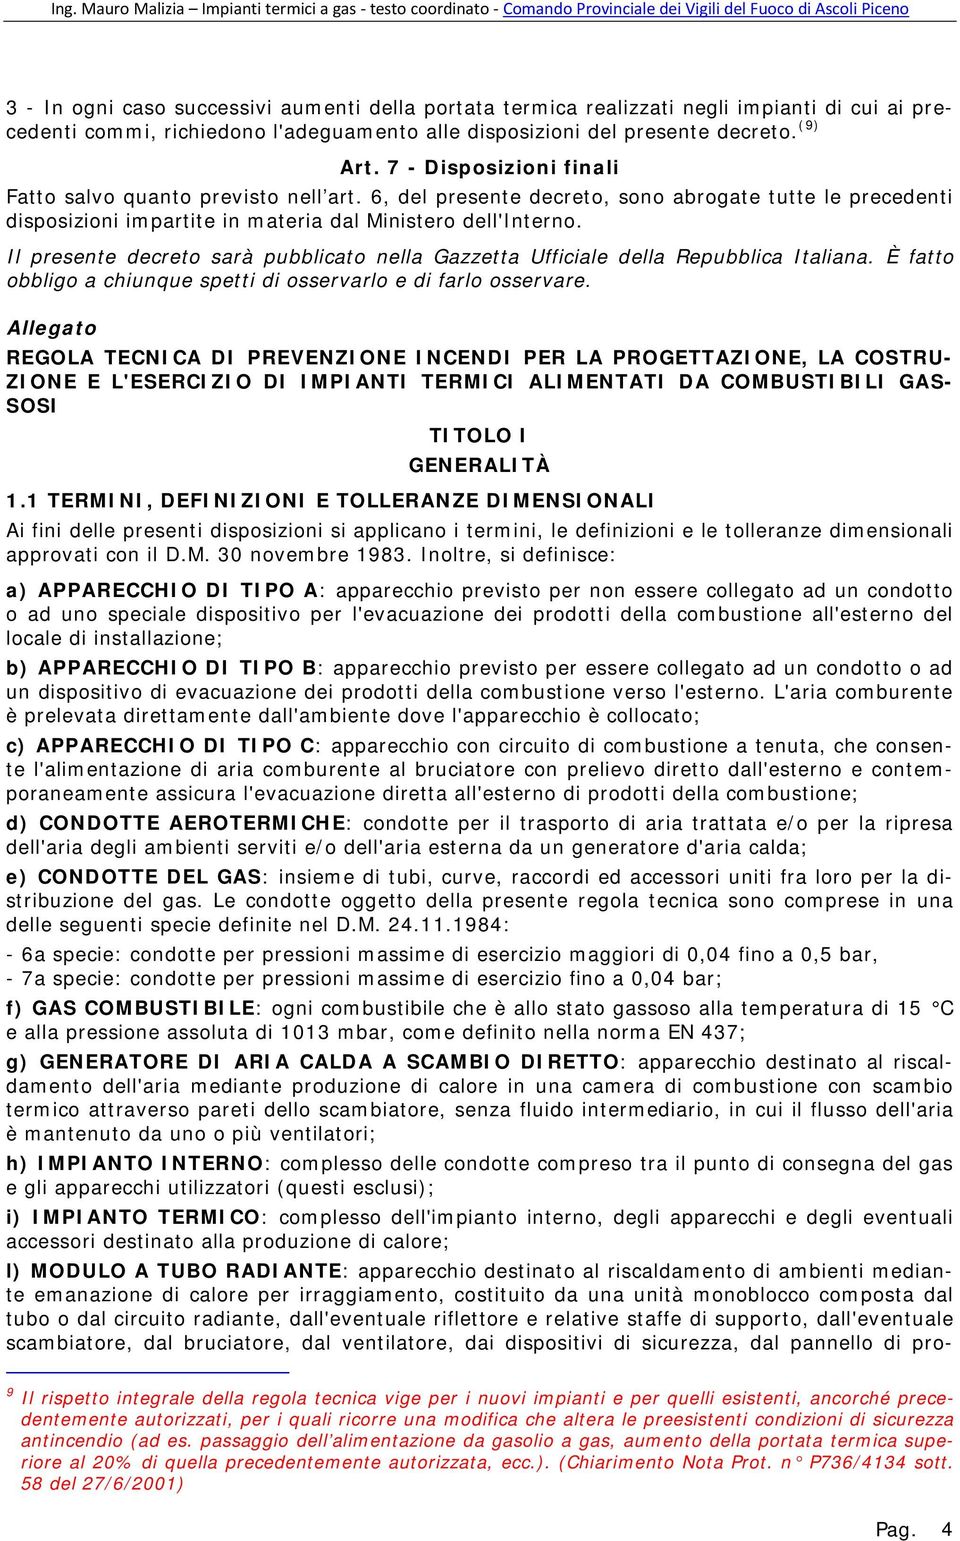 Il presente decreto sarà pubblicato nella Gazzetta Ufficiale della Repubblica Italiana. È fatto obbligo a chiunque spetti di osservarlo e di farlo osservare.